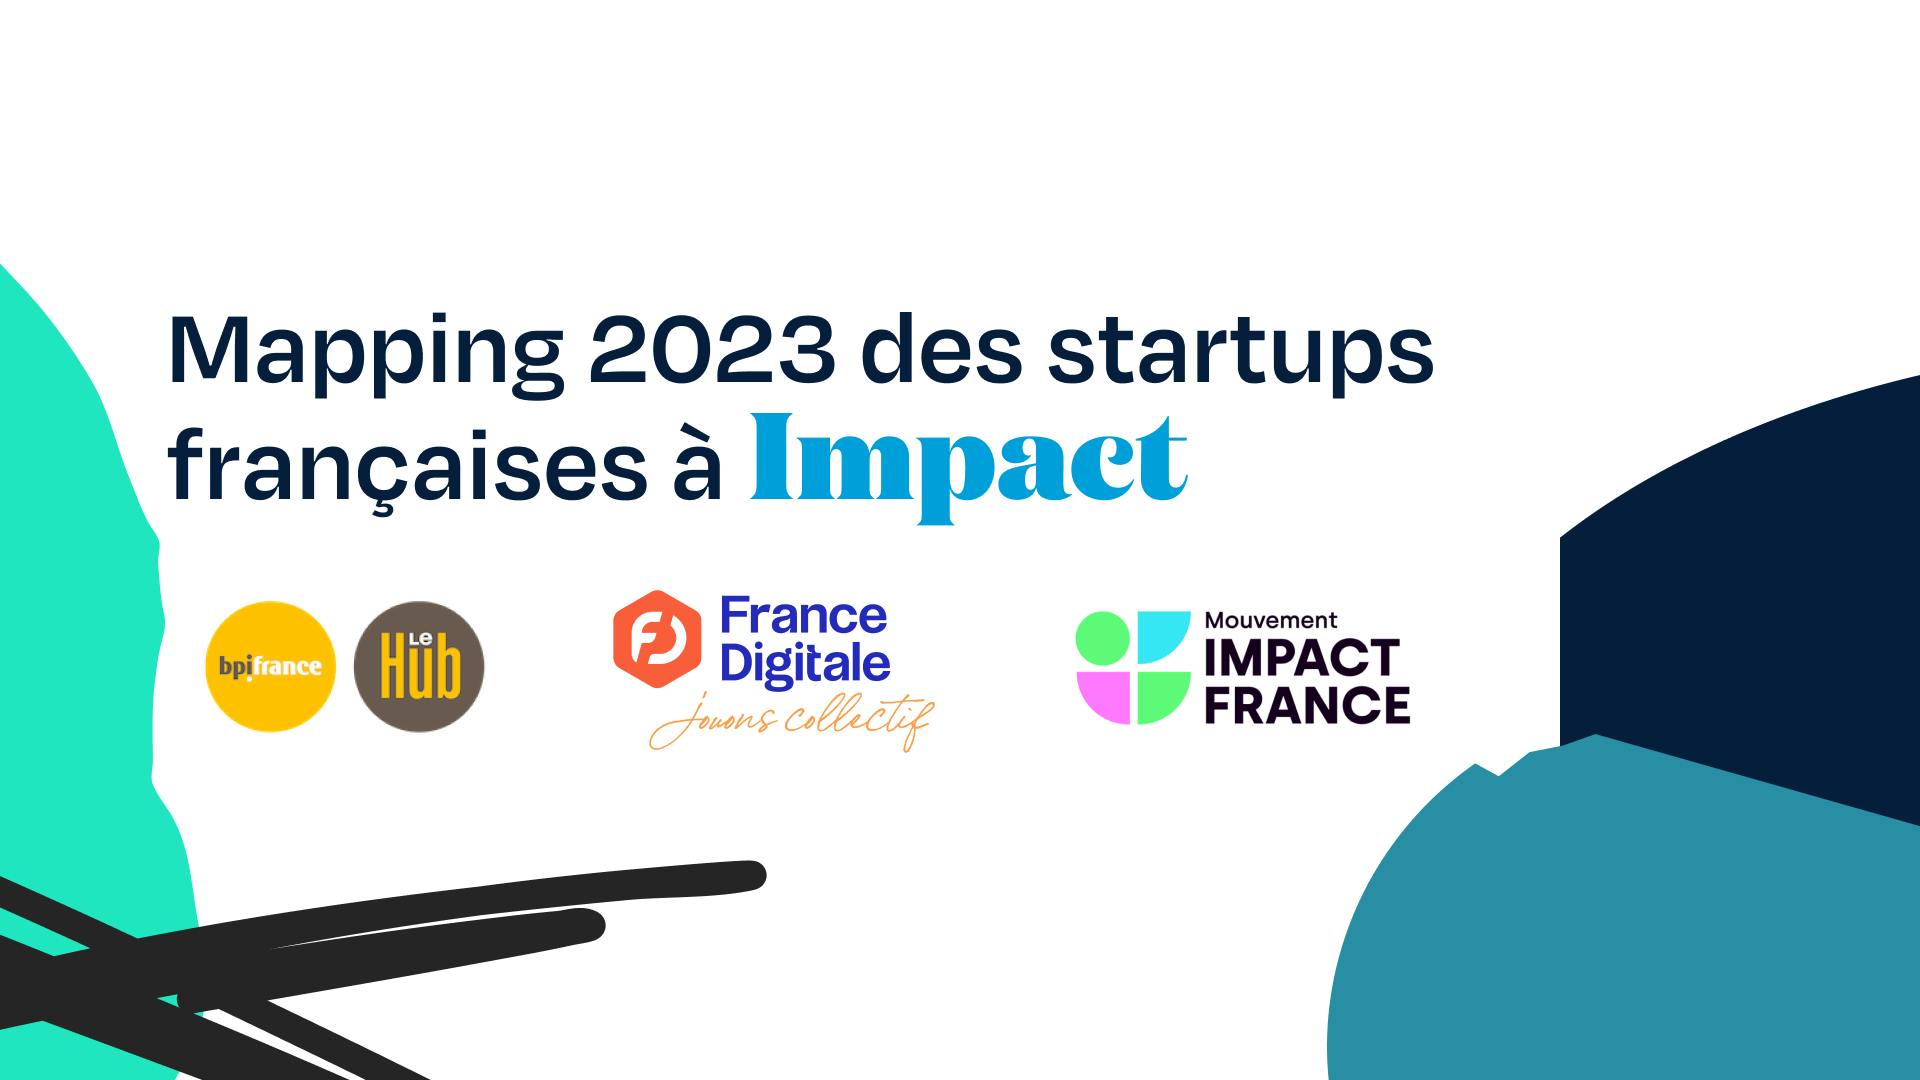 Le mapping des startups françaises de l'impact